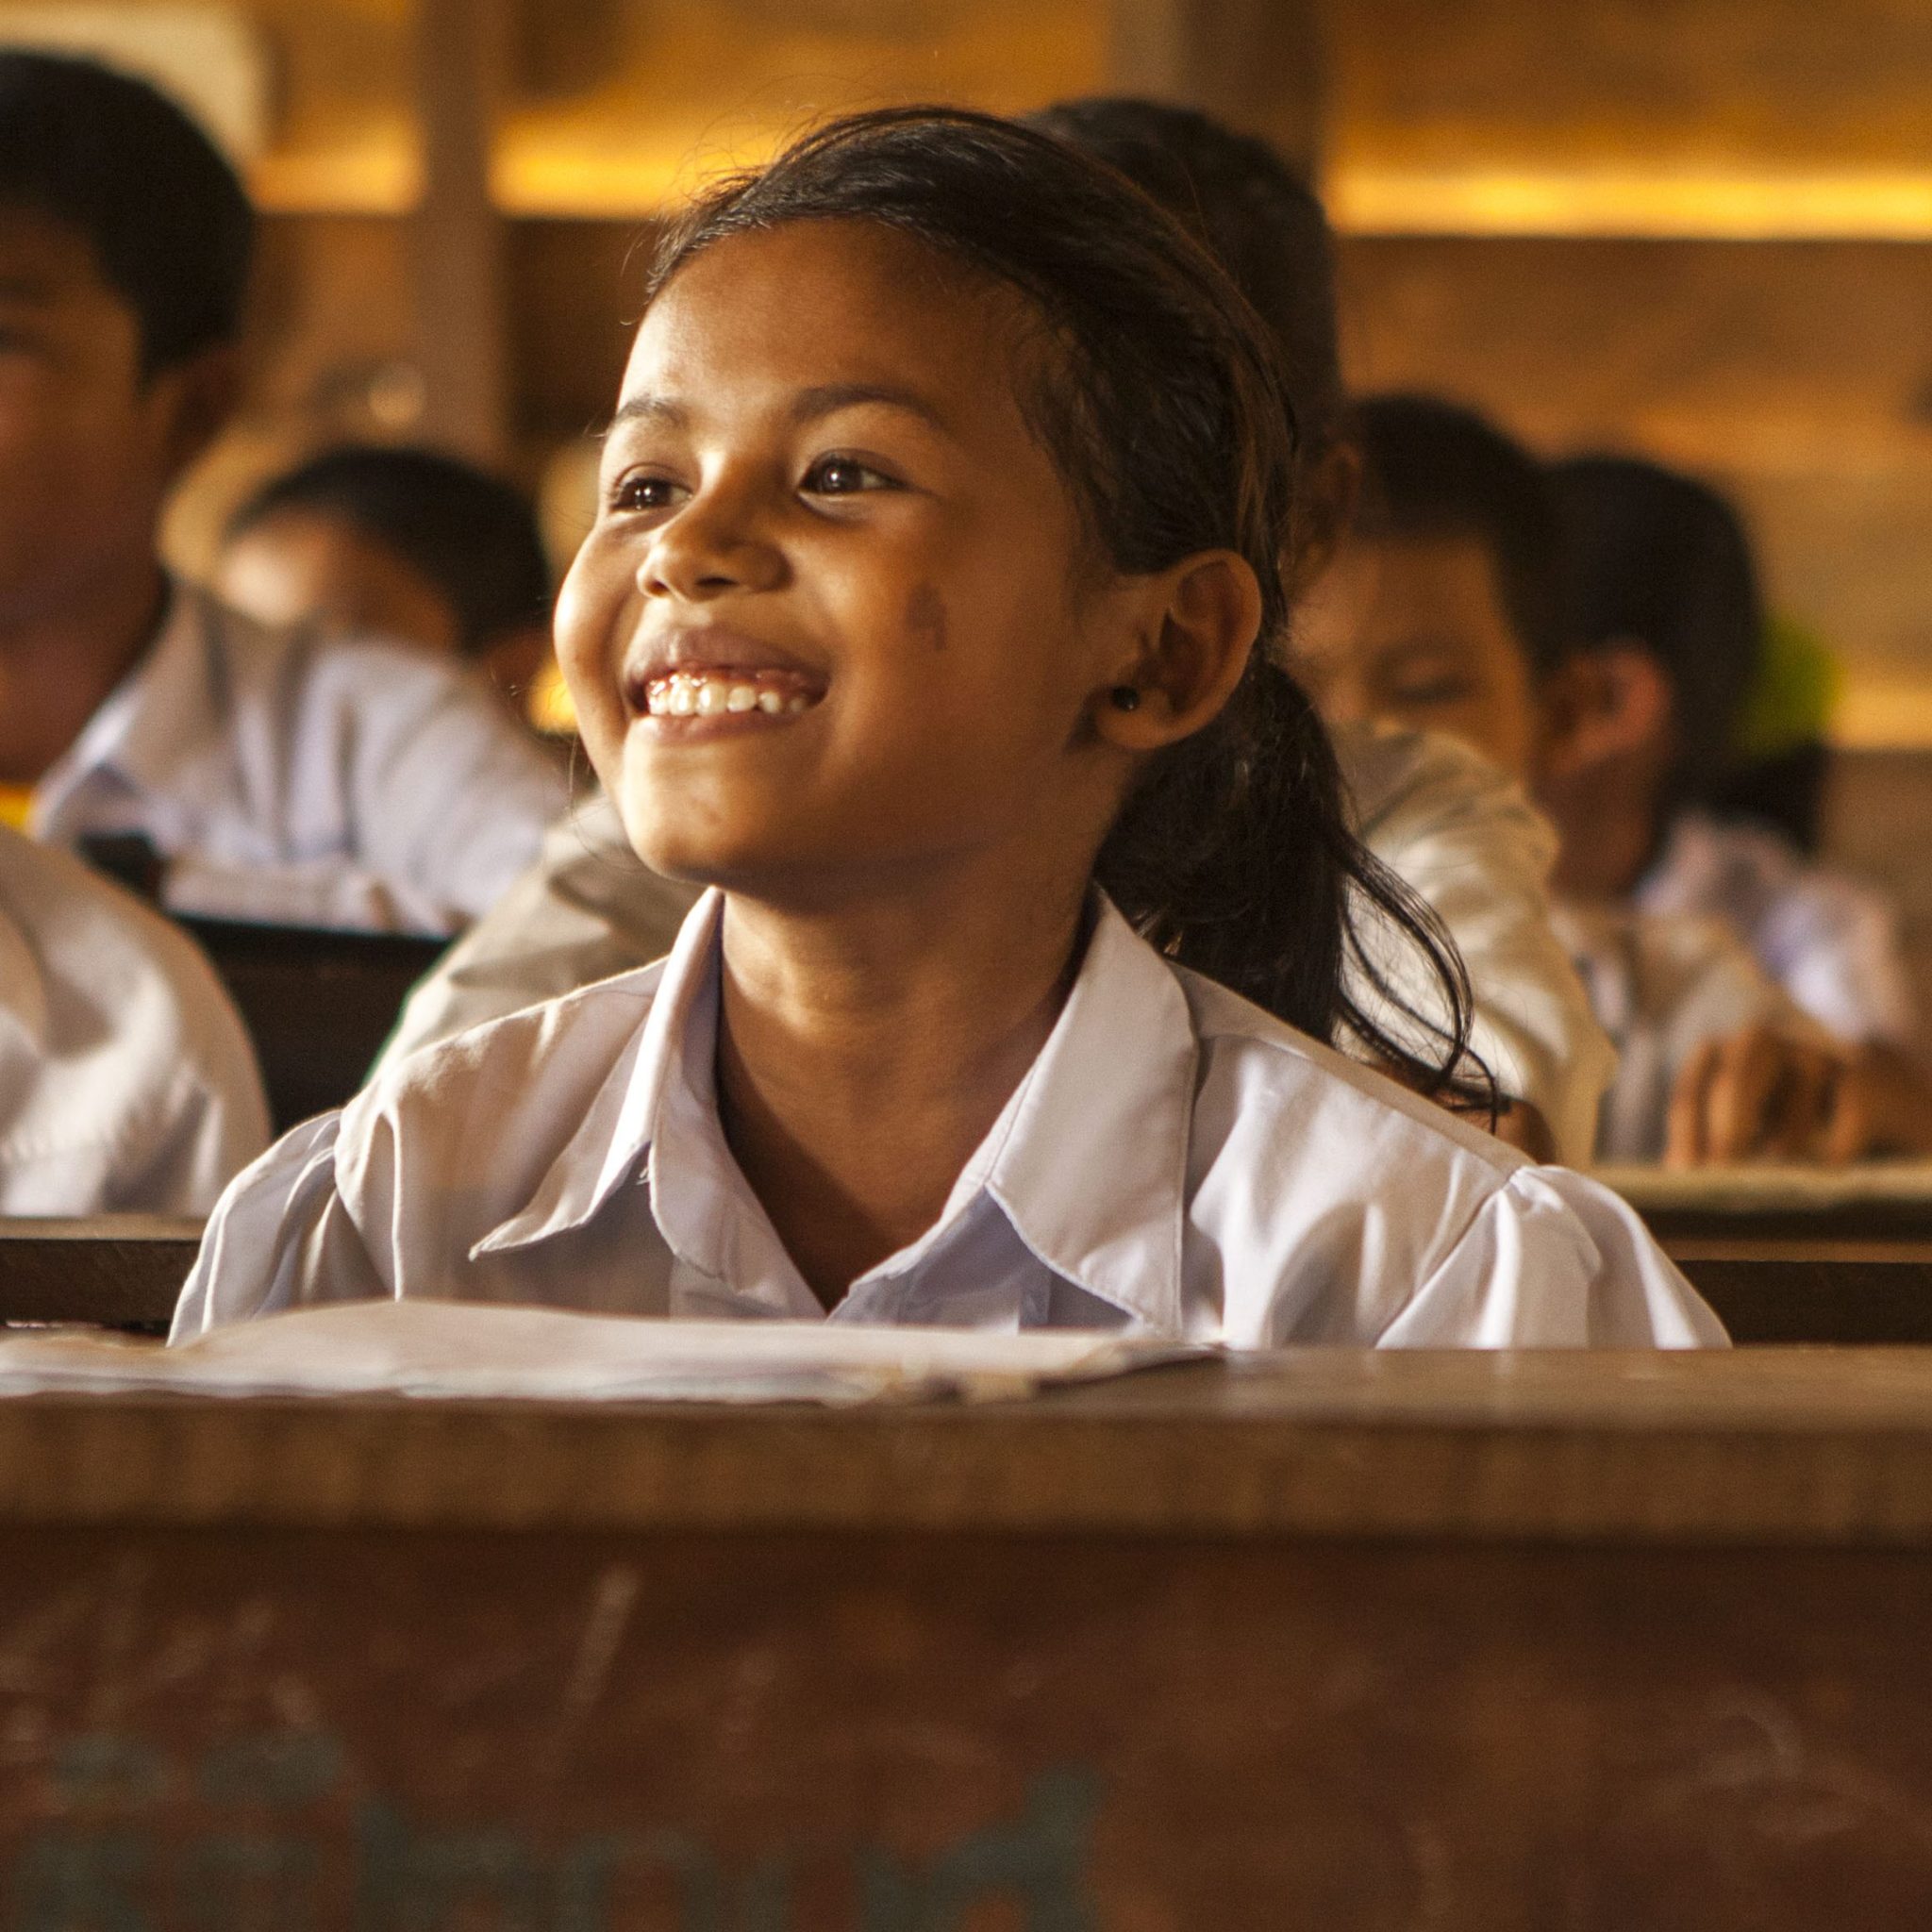 Enfants du Mékong assure l’éducation des enfants de l’Asie du Sud-Est